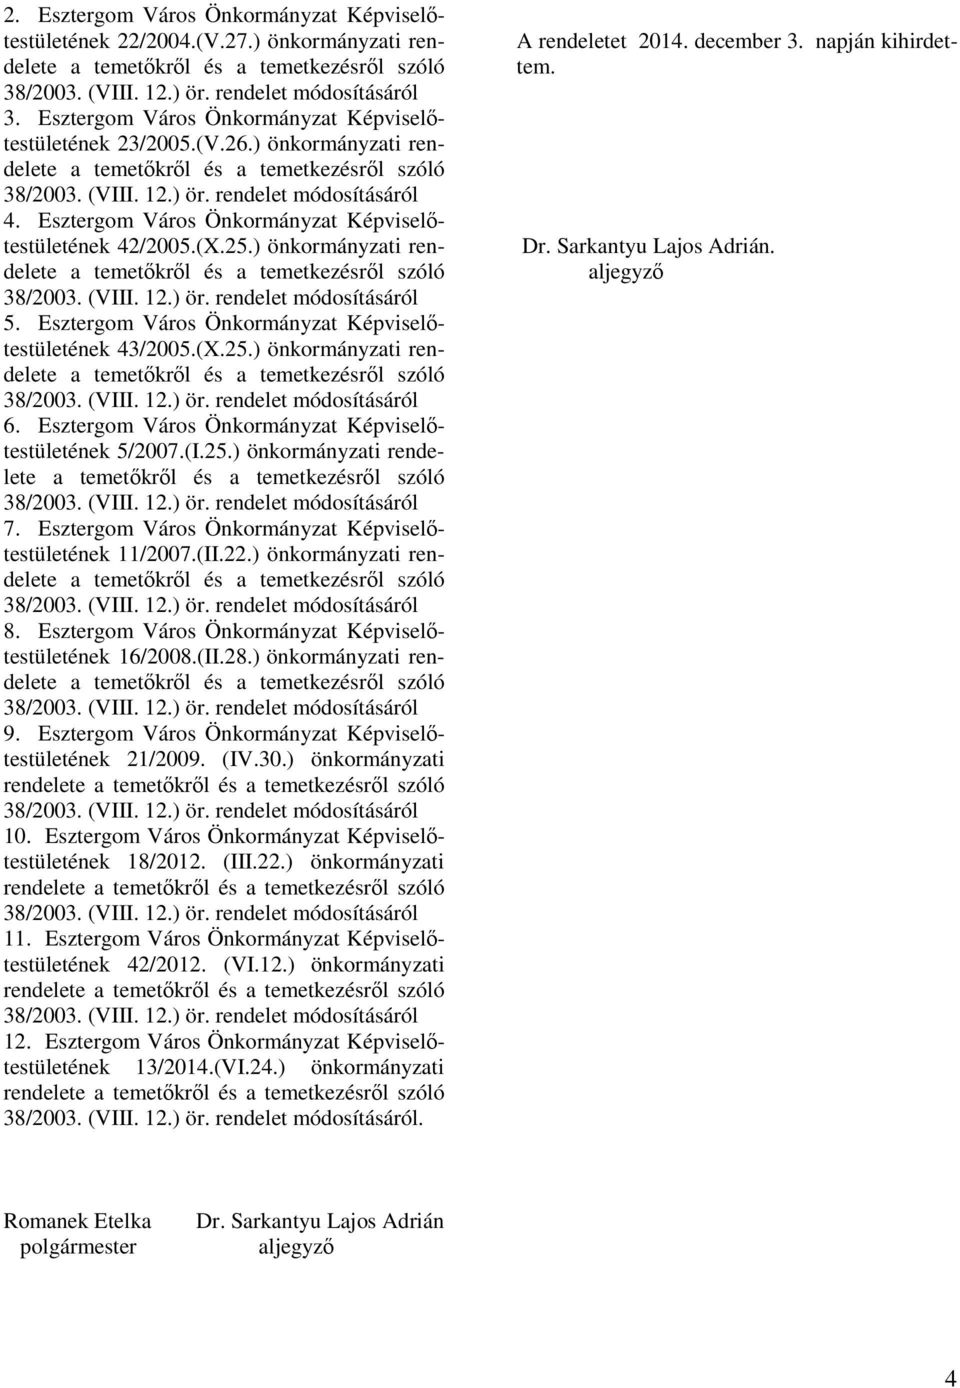 Esztergom Város Önkormányzat Képviselıtestületének 5/2007.(I.25.) önkormányzati rendelete 7. Esztergom Város Önkormányzat Képviselıtestületének 11/2007.(II.22.) önkormányzati rendelete 8.